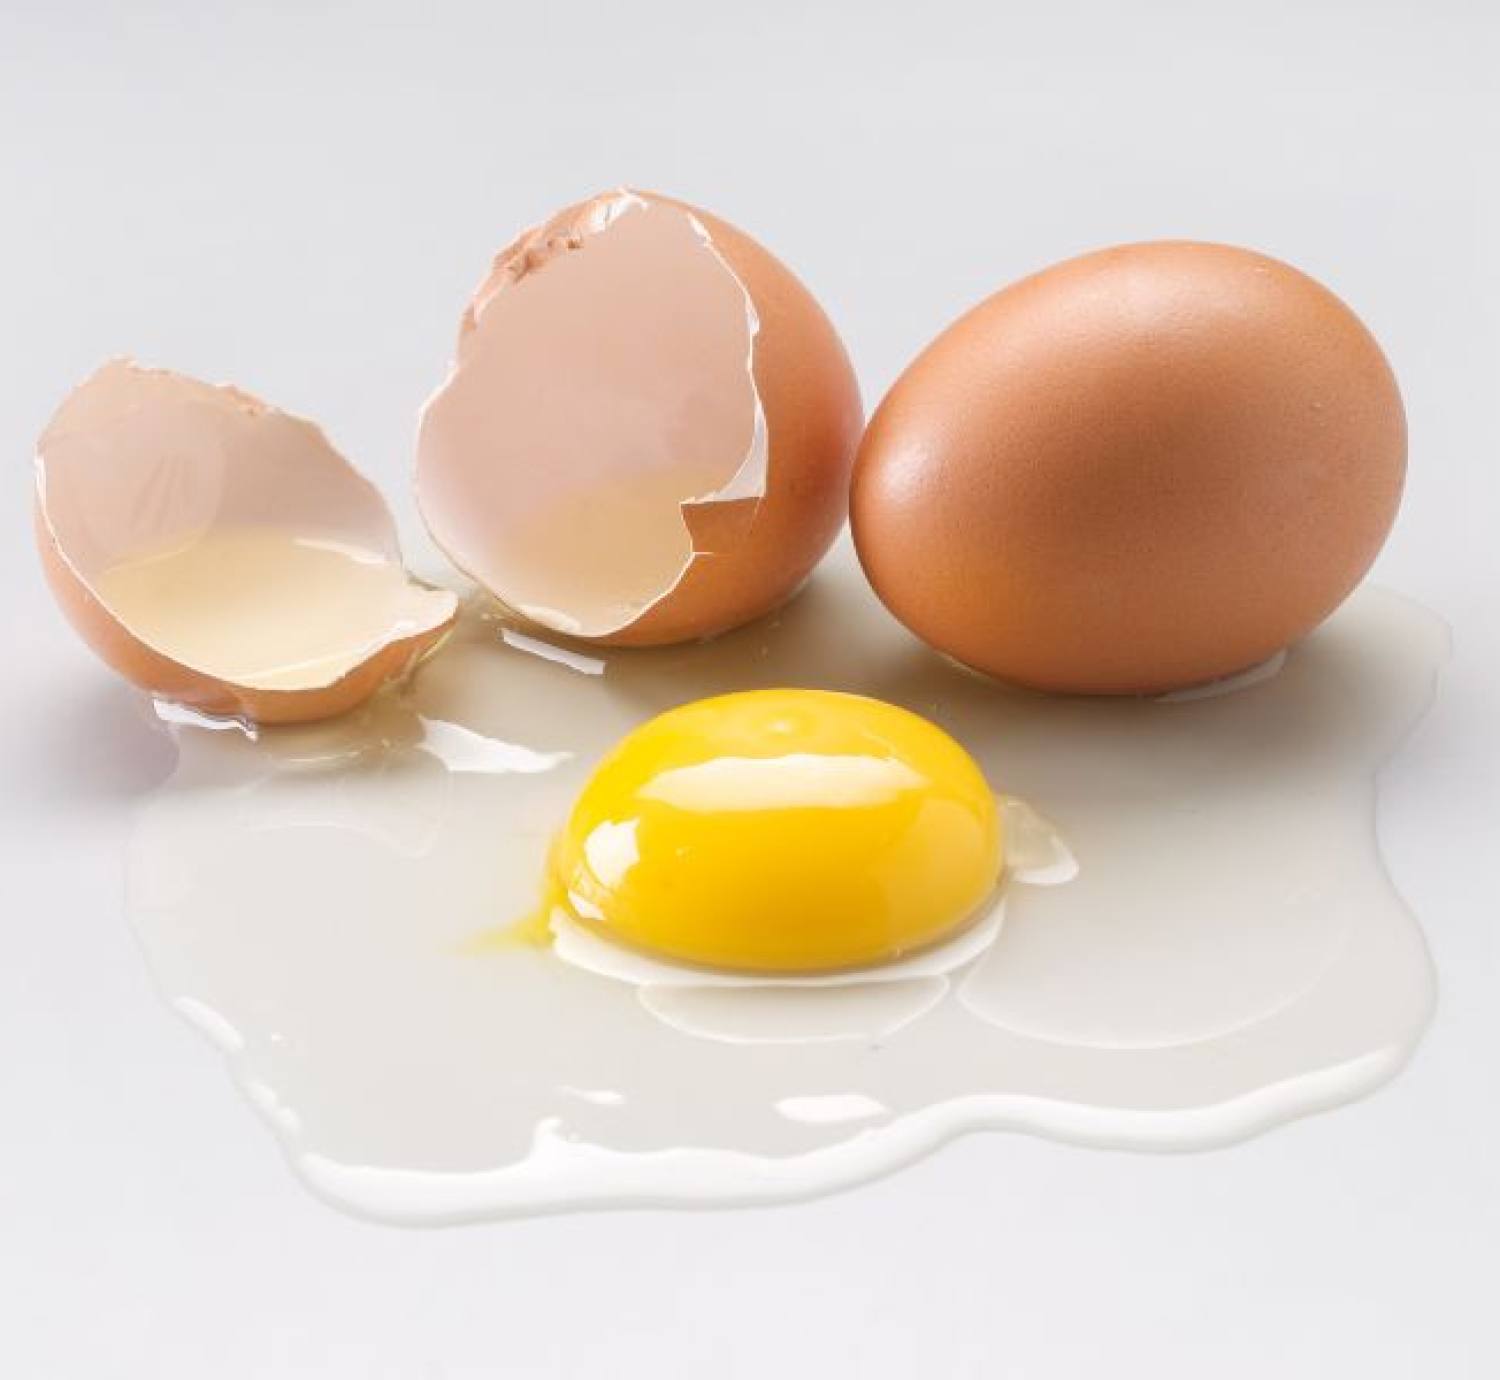 TOP 7 cách làm trắng da bằng trứng gà hiệu quả tại nhà